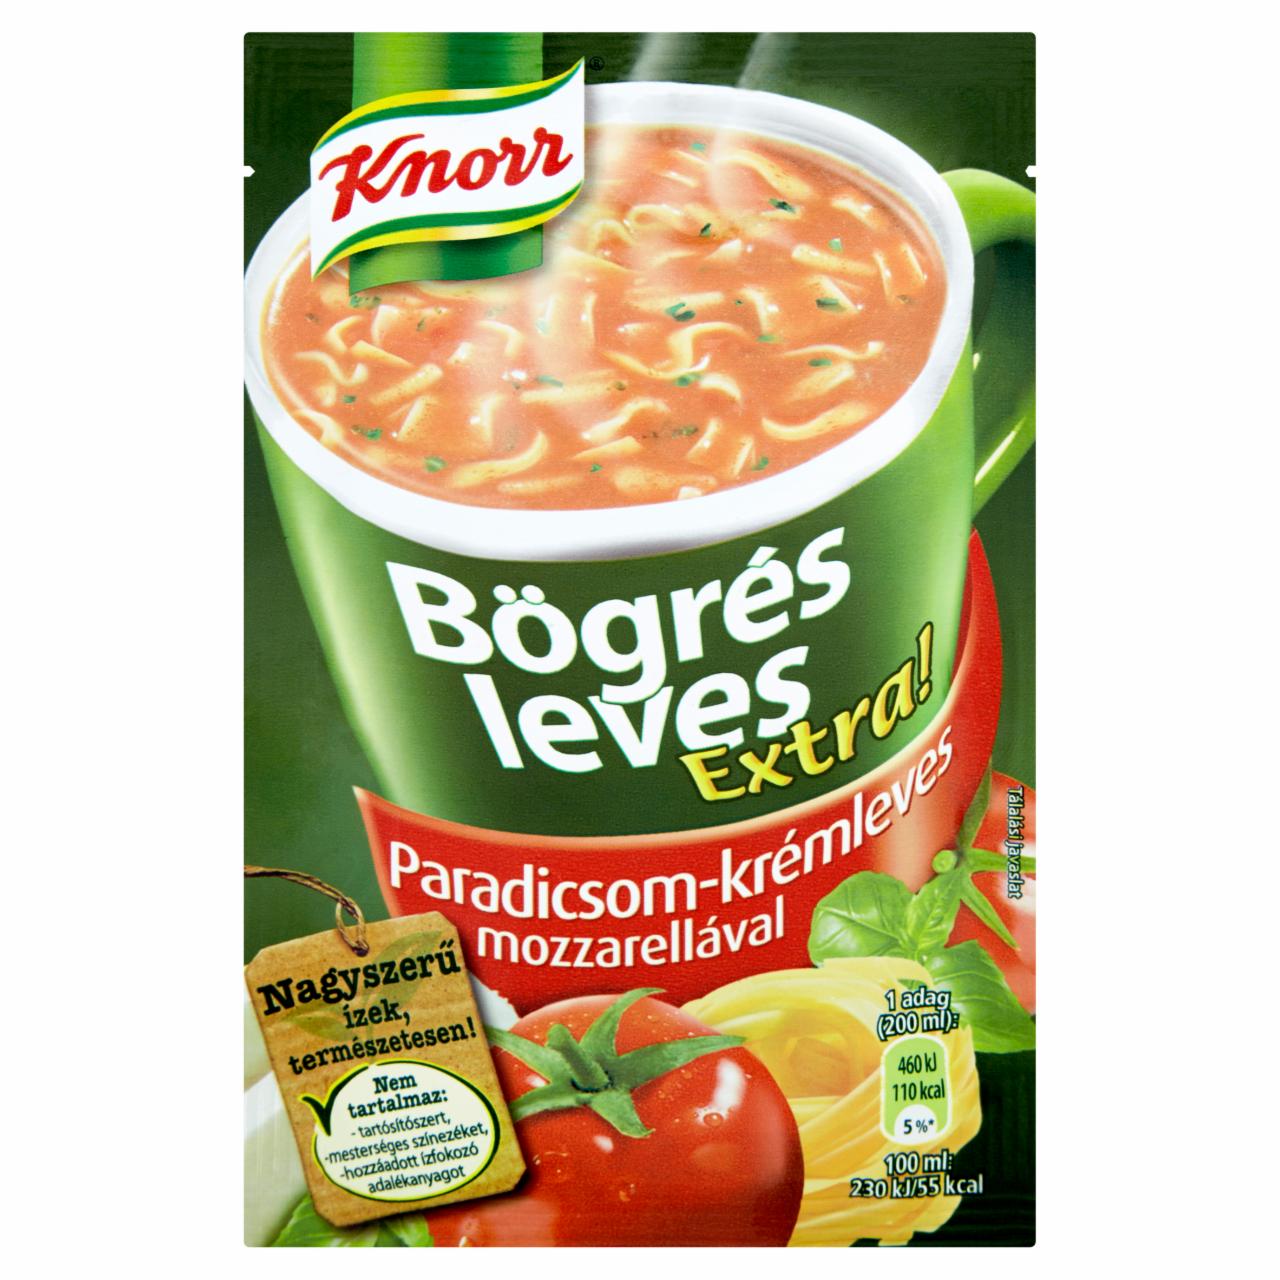 Képek - Knorr Bögrés Leves Extra! paradicsom-krémleves mozzarellával 27 g